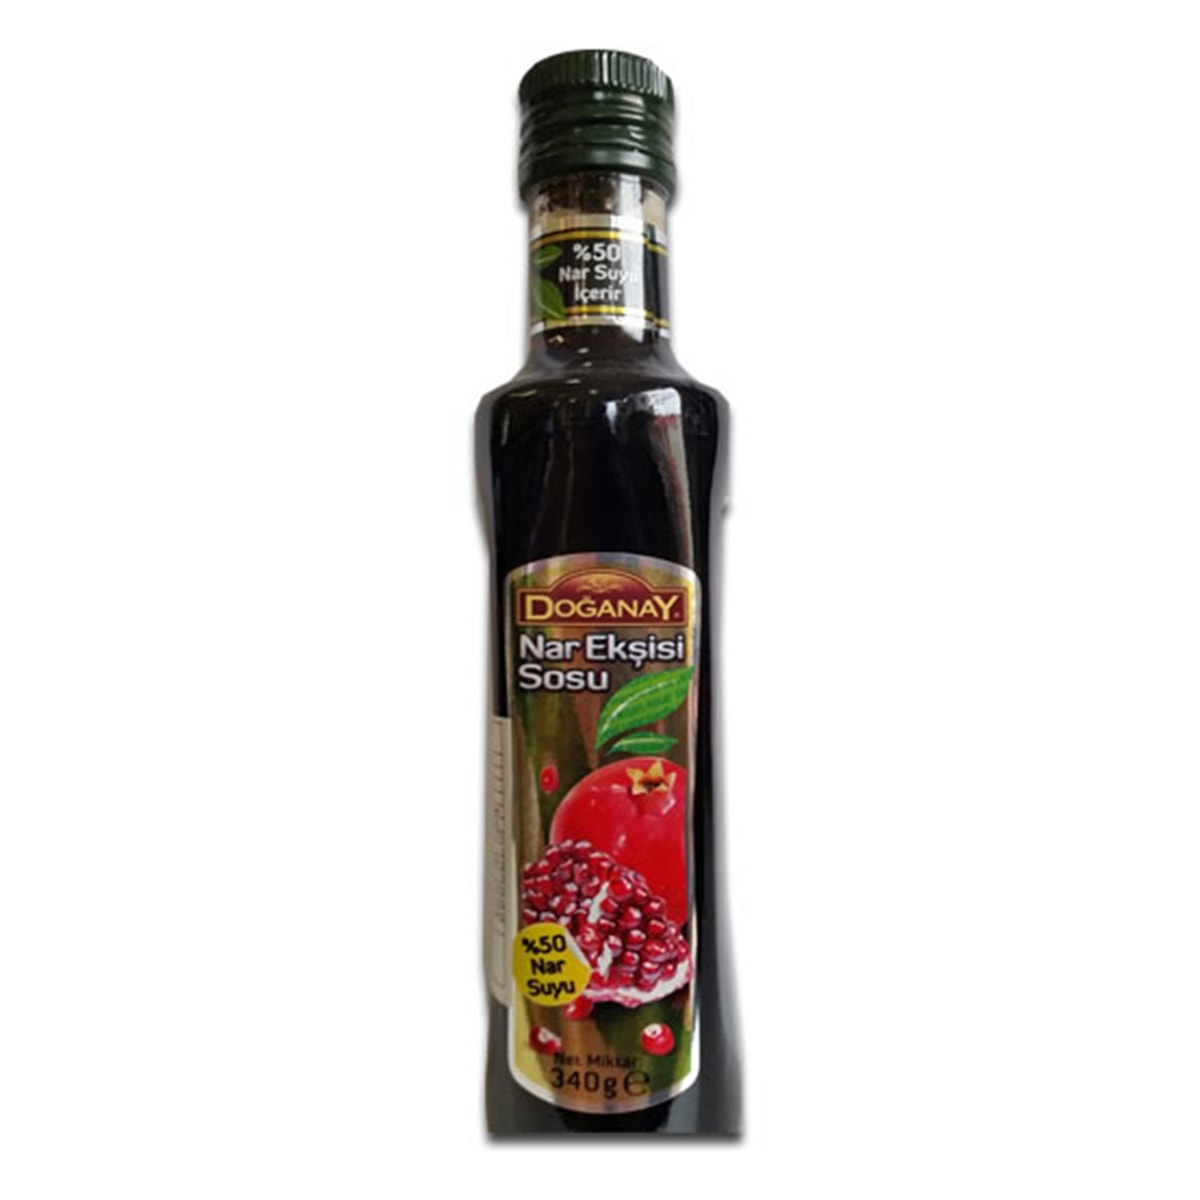 Buy Doganay Pomegranate Molasses Syrup (Nar Eksisi Sosu) - 340 gm